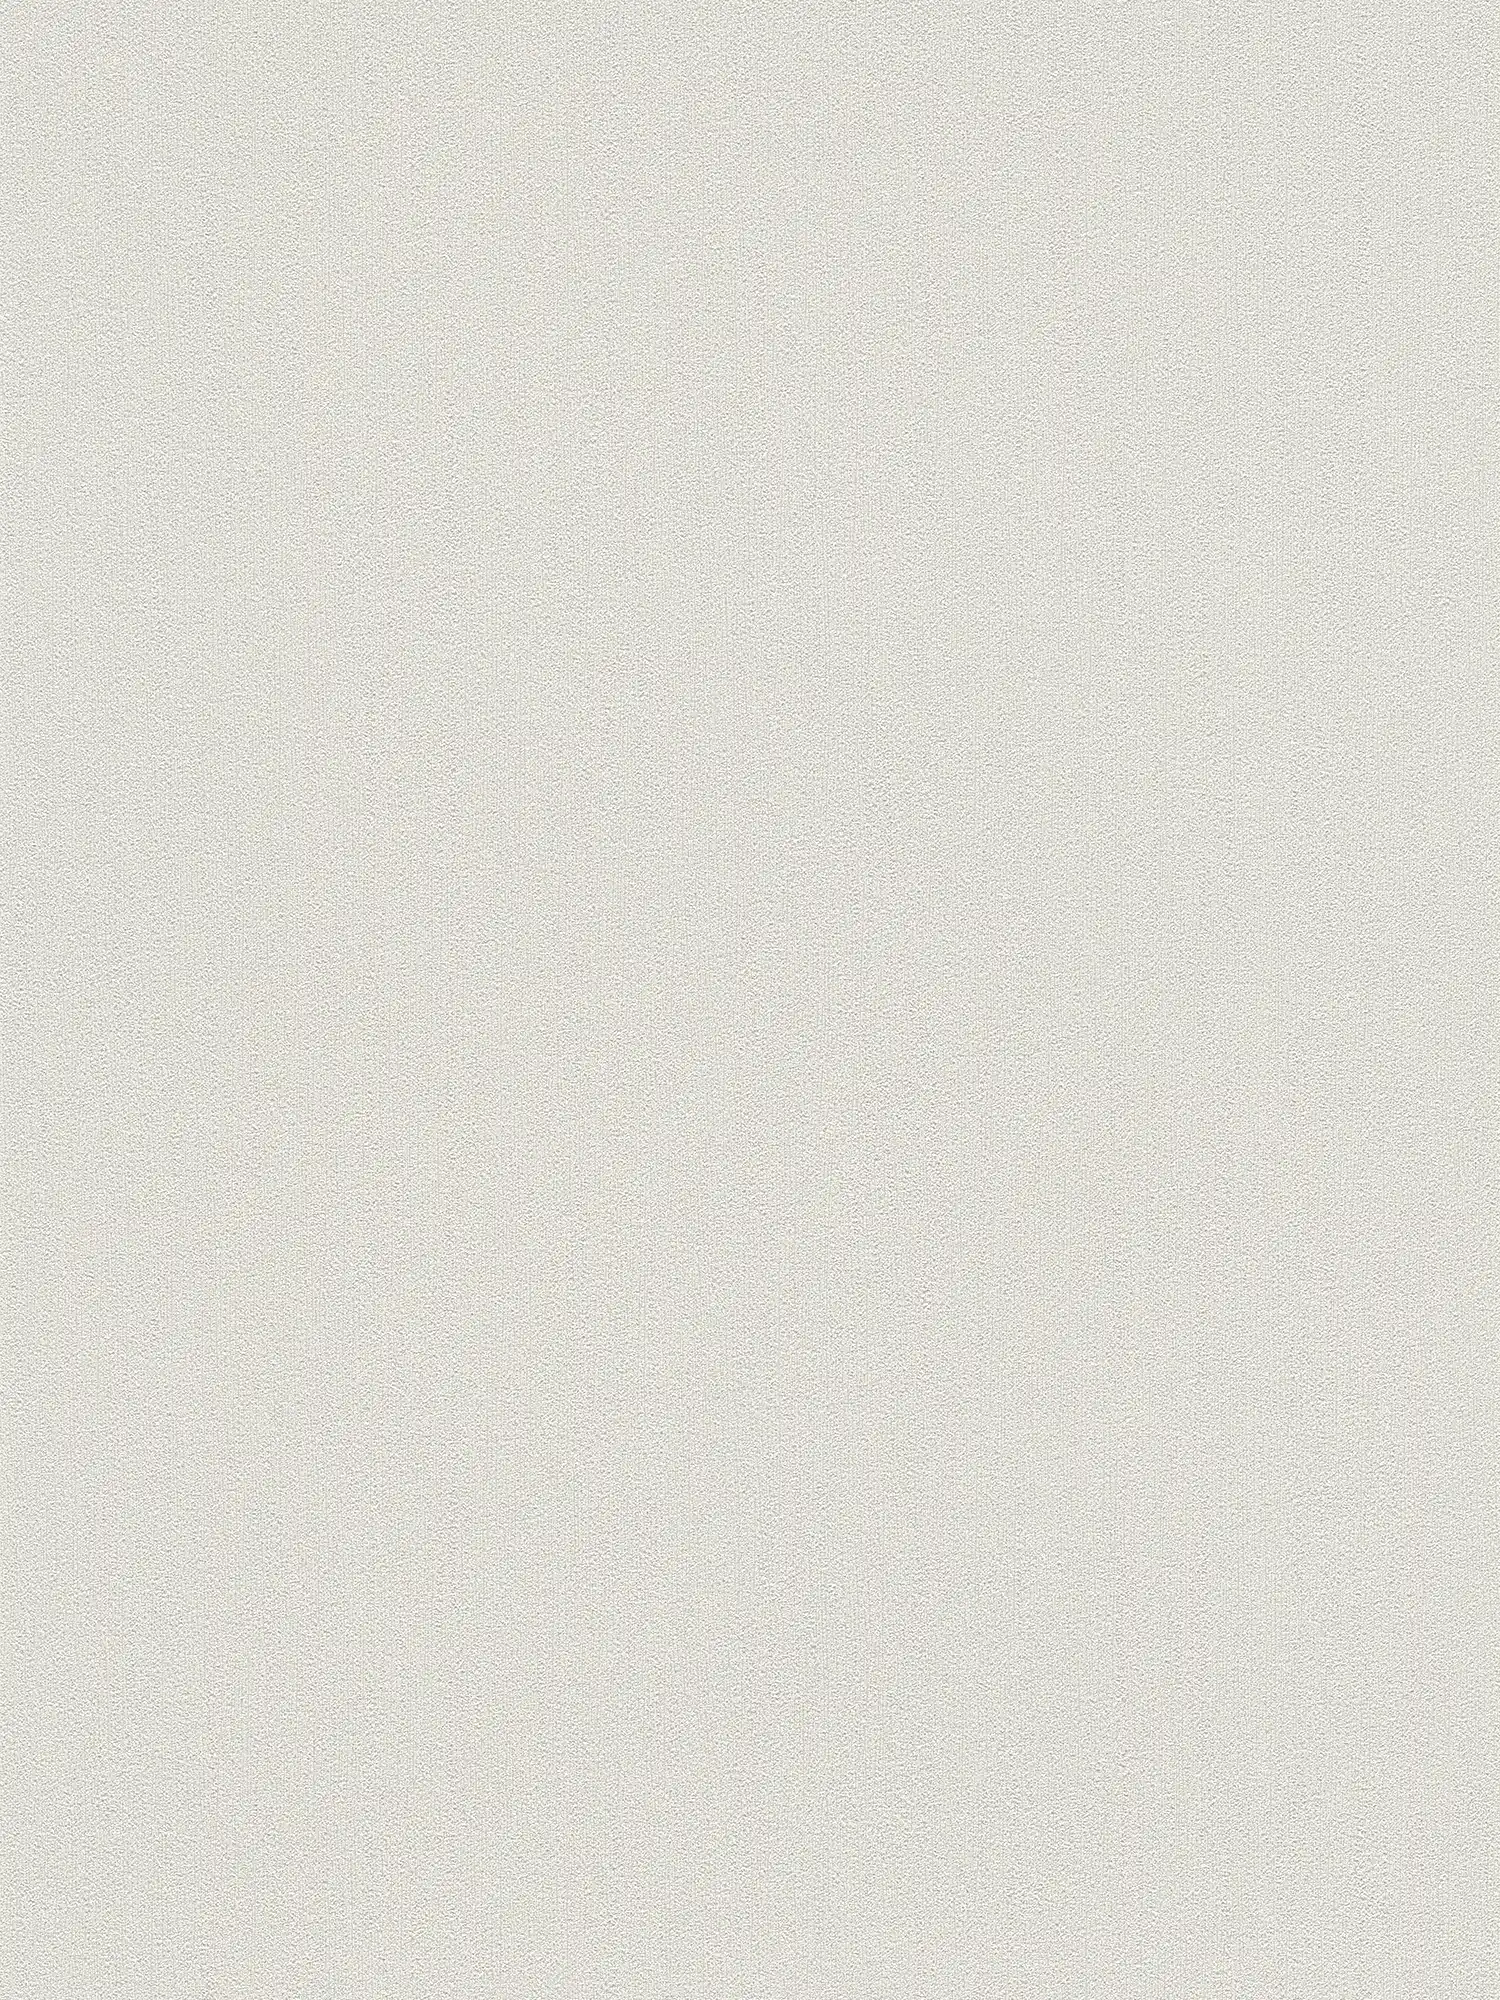 Tapete Karl LAGERFELD mit Prägetextur – Grau, Weiß
